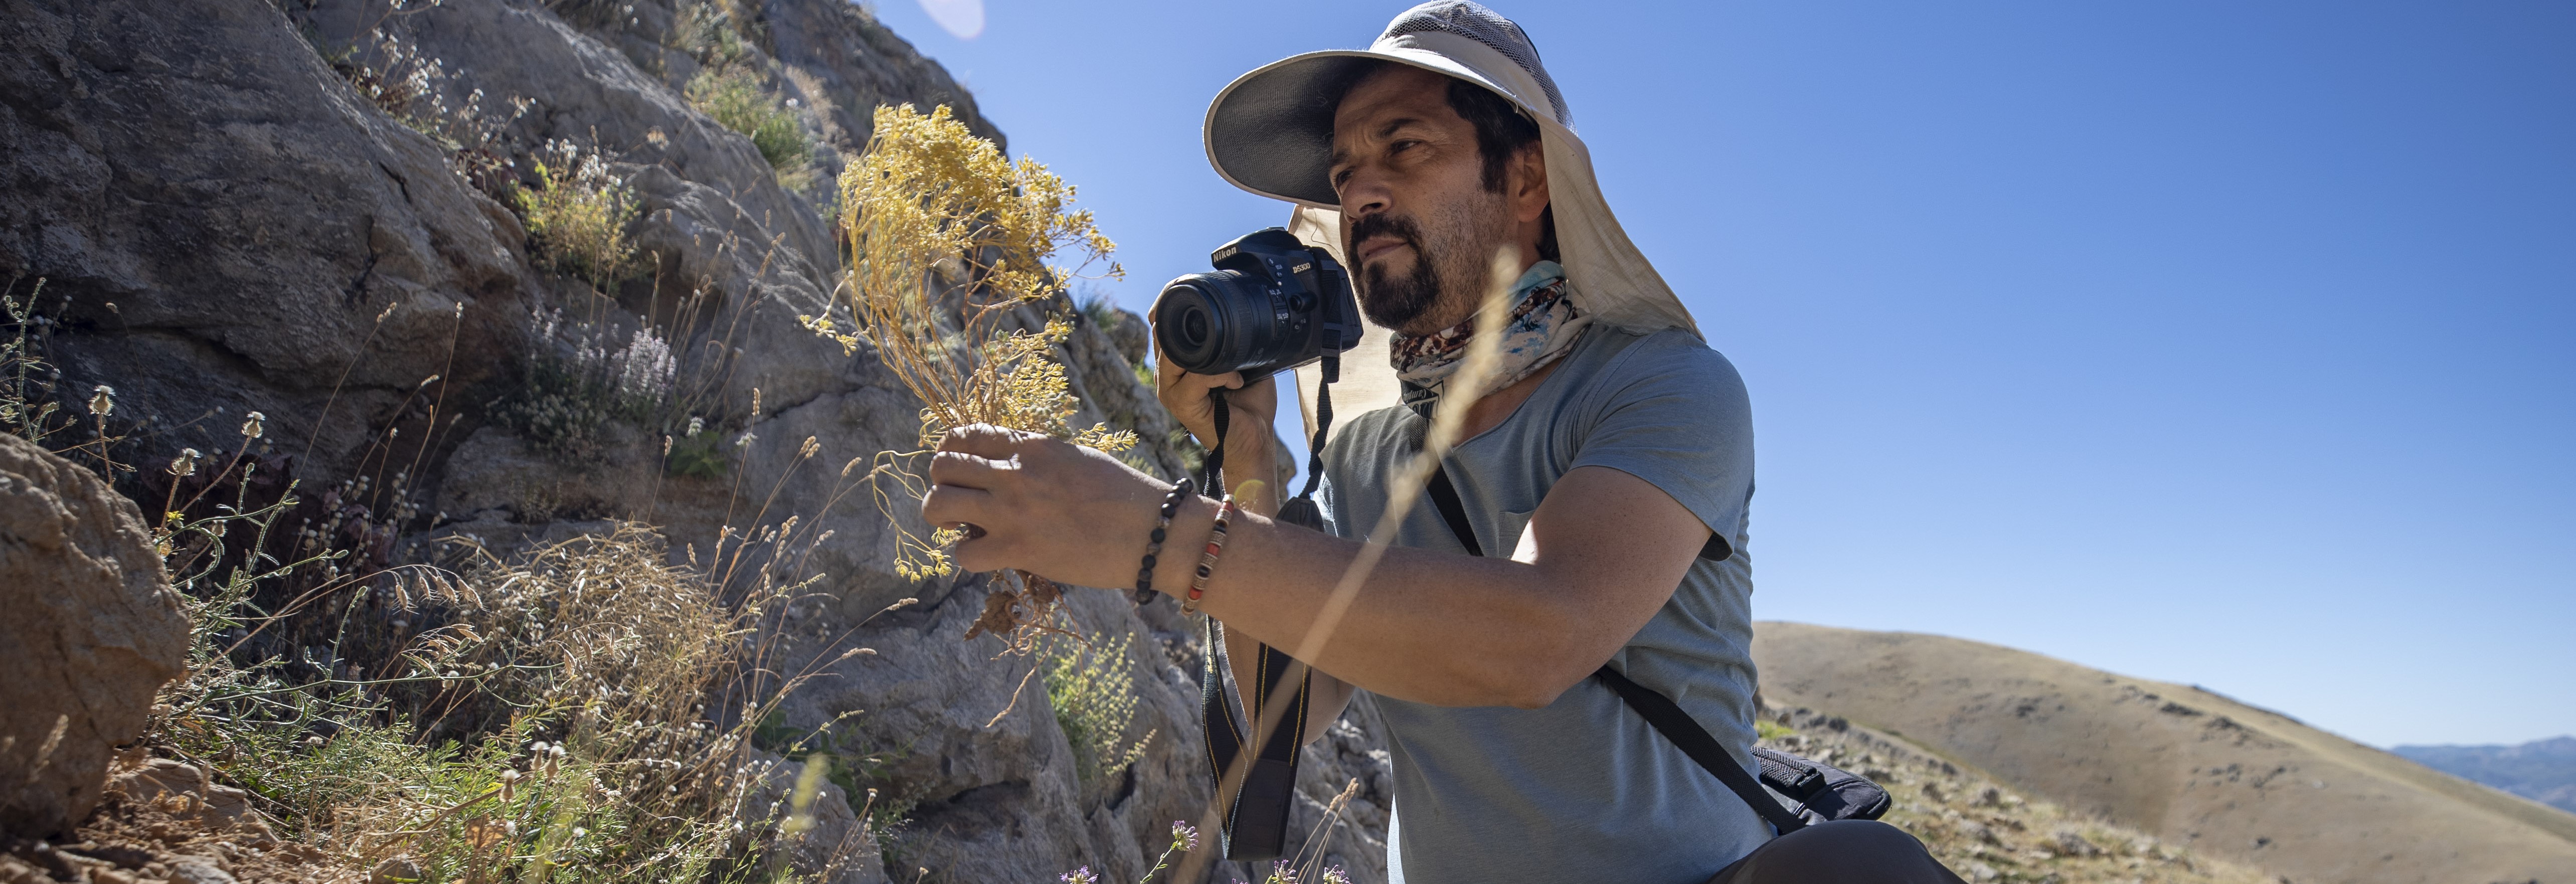 Konyalı akademisyen Tunceli dağlarında endemik bitkilerin izini sürüyor